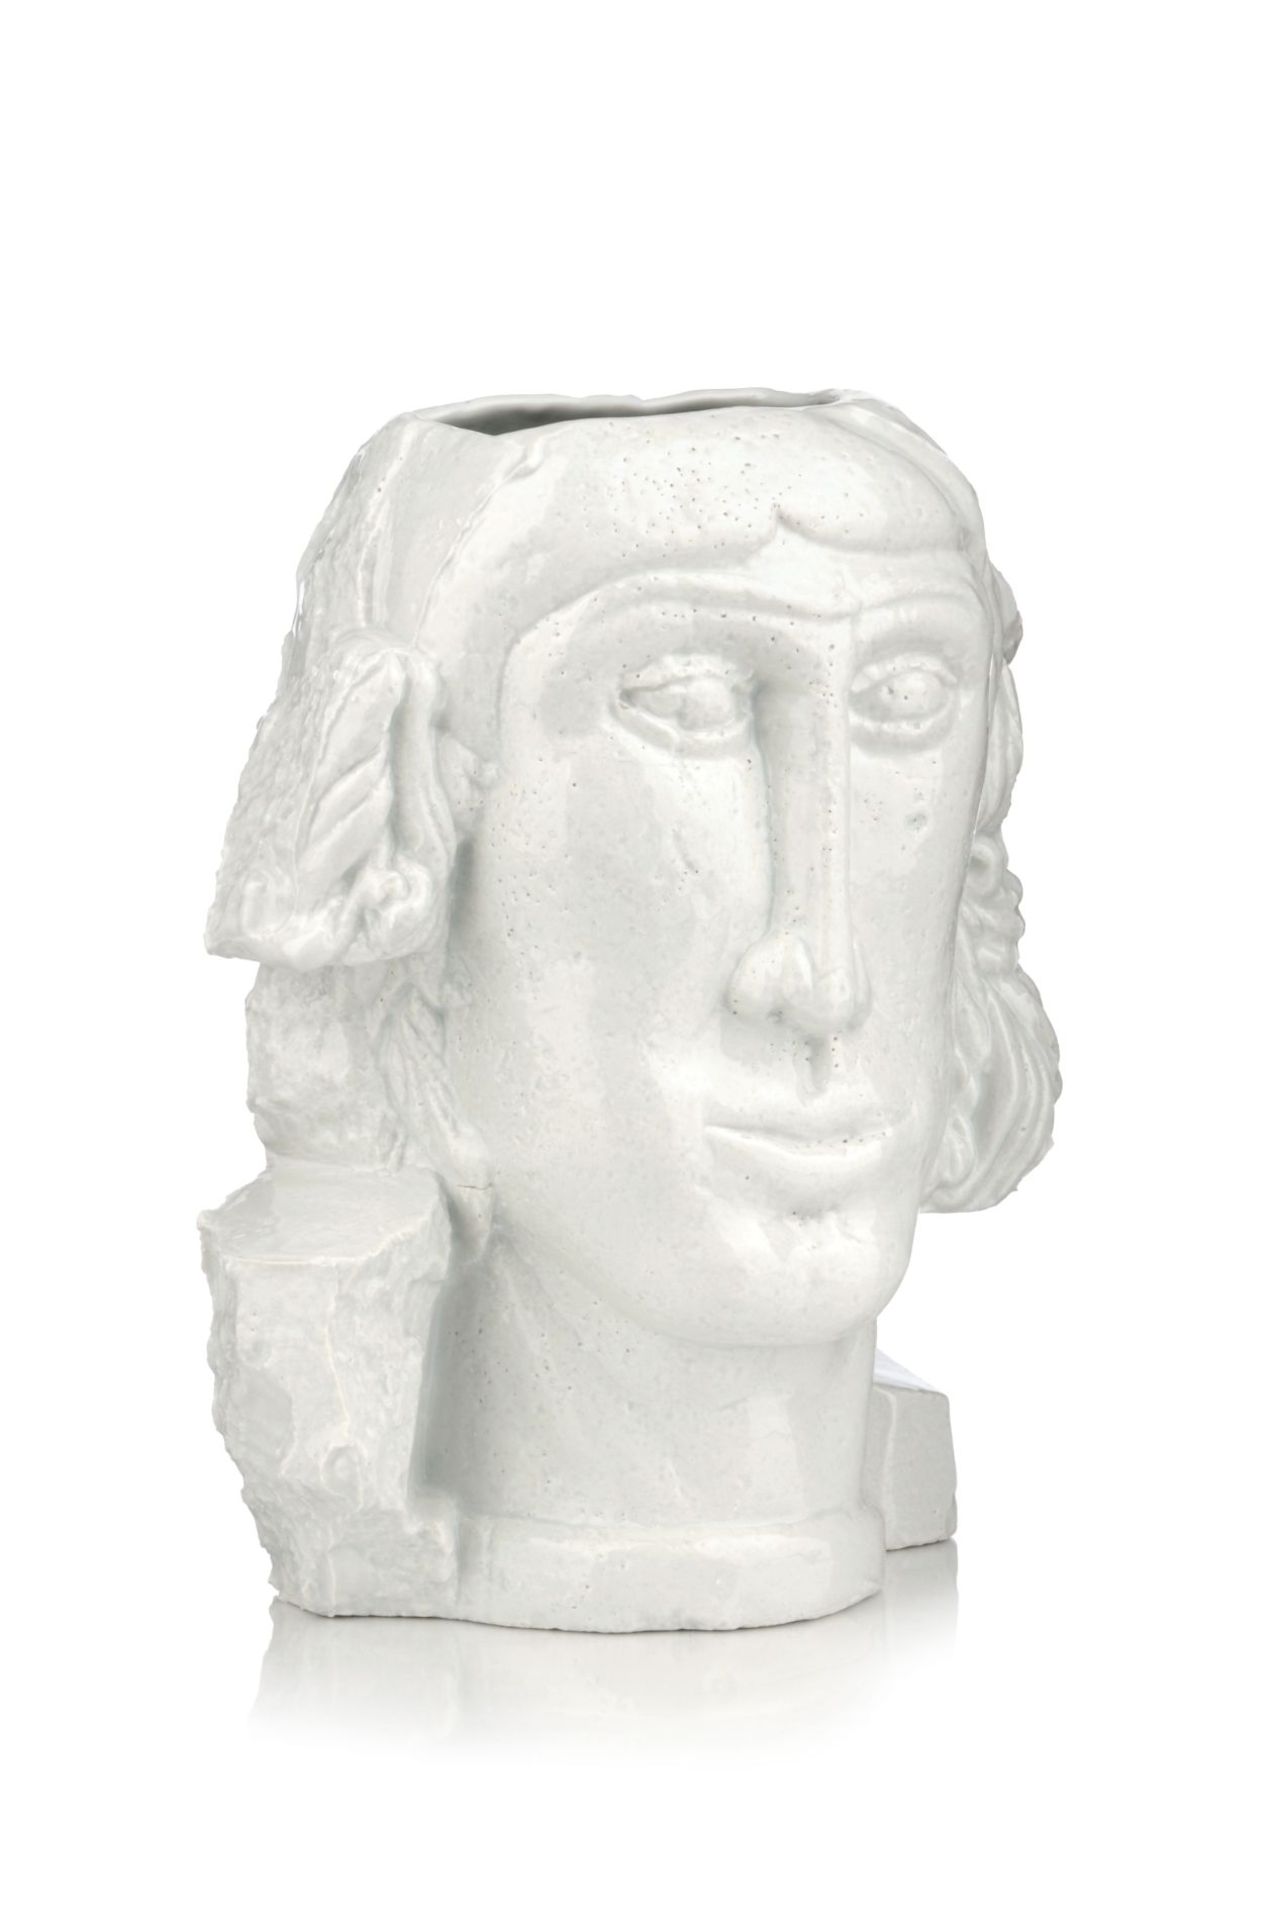 Vase in Form eines männlichen Kopfes. Horst Skorupa. 1979.